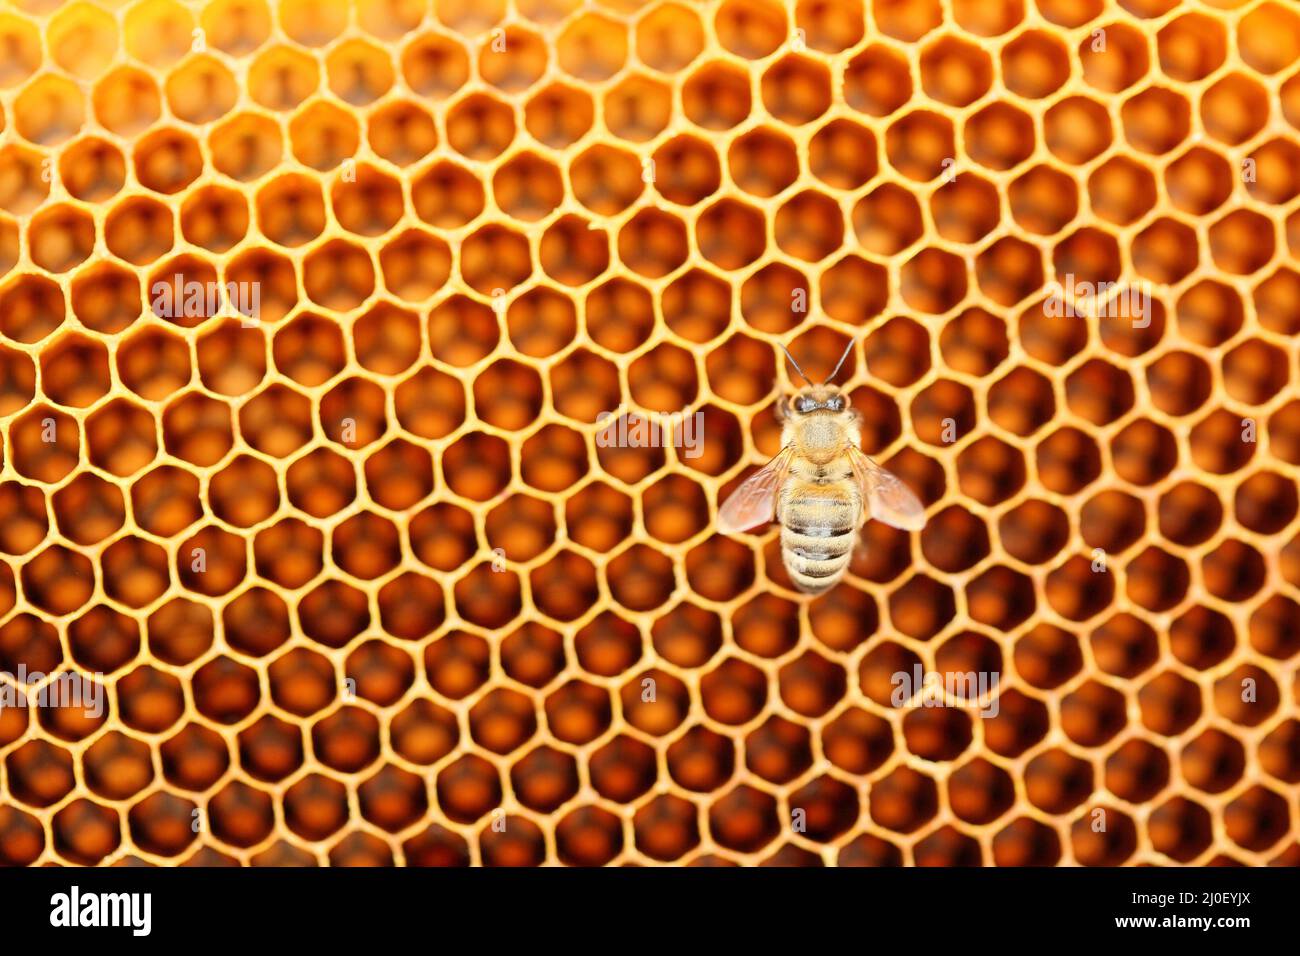 One honey bee Stock Photo